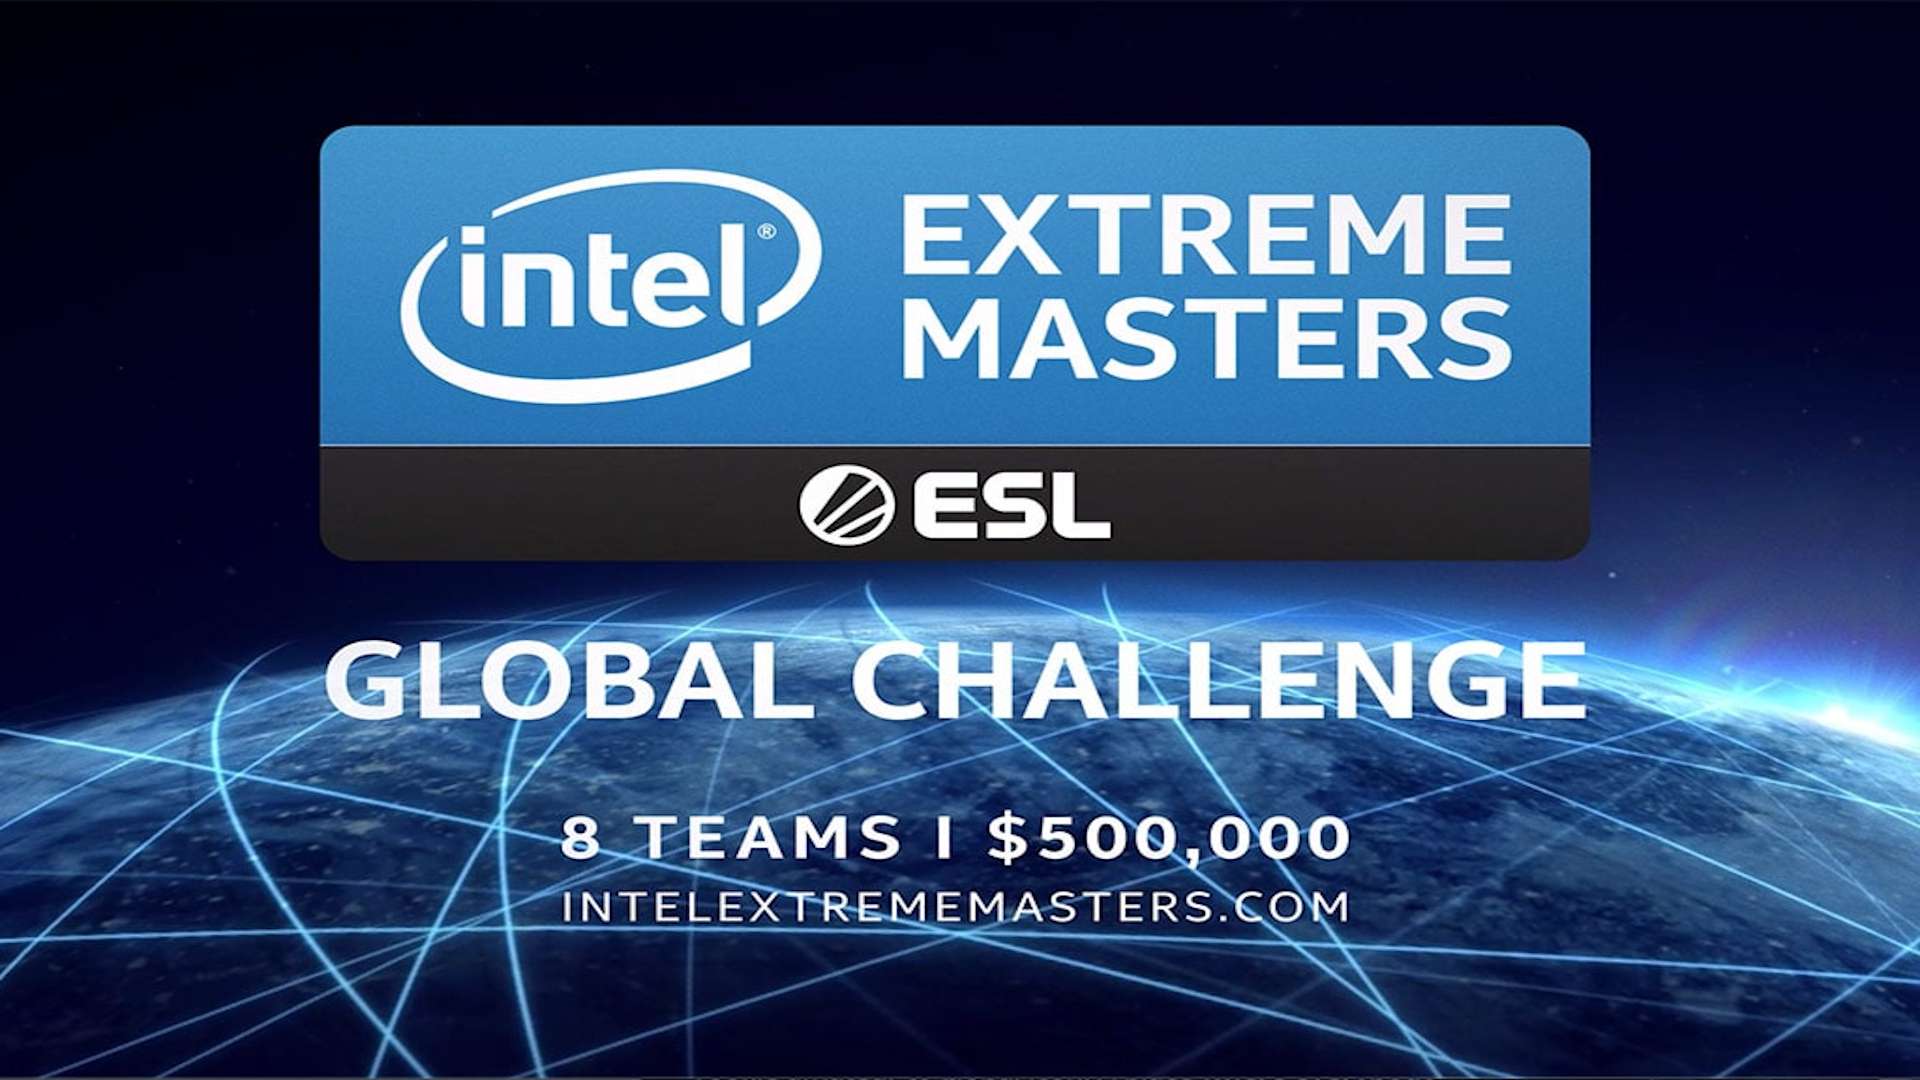 Grpahic for ESL's IEM Global Challenge